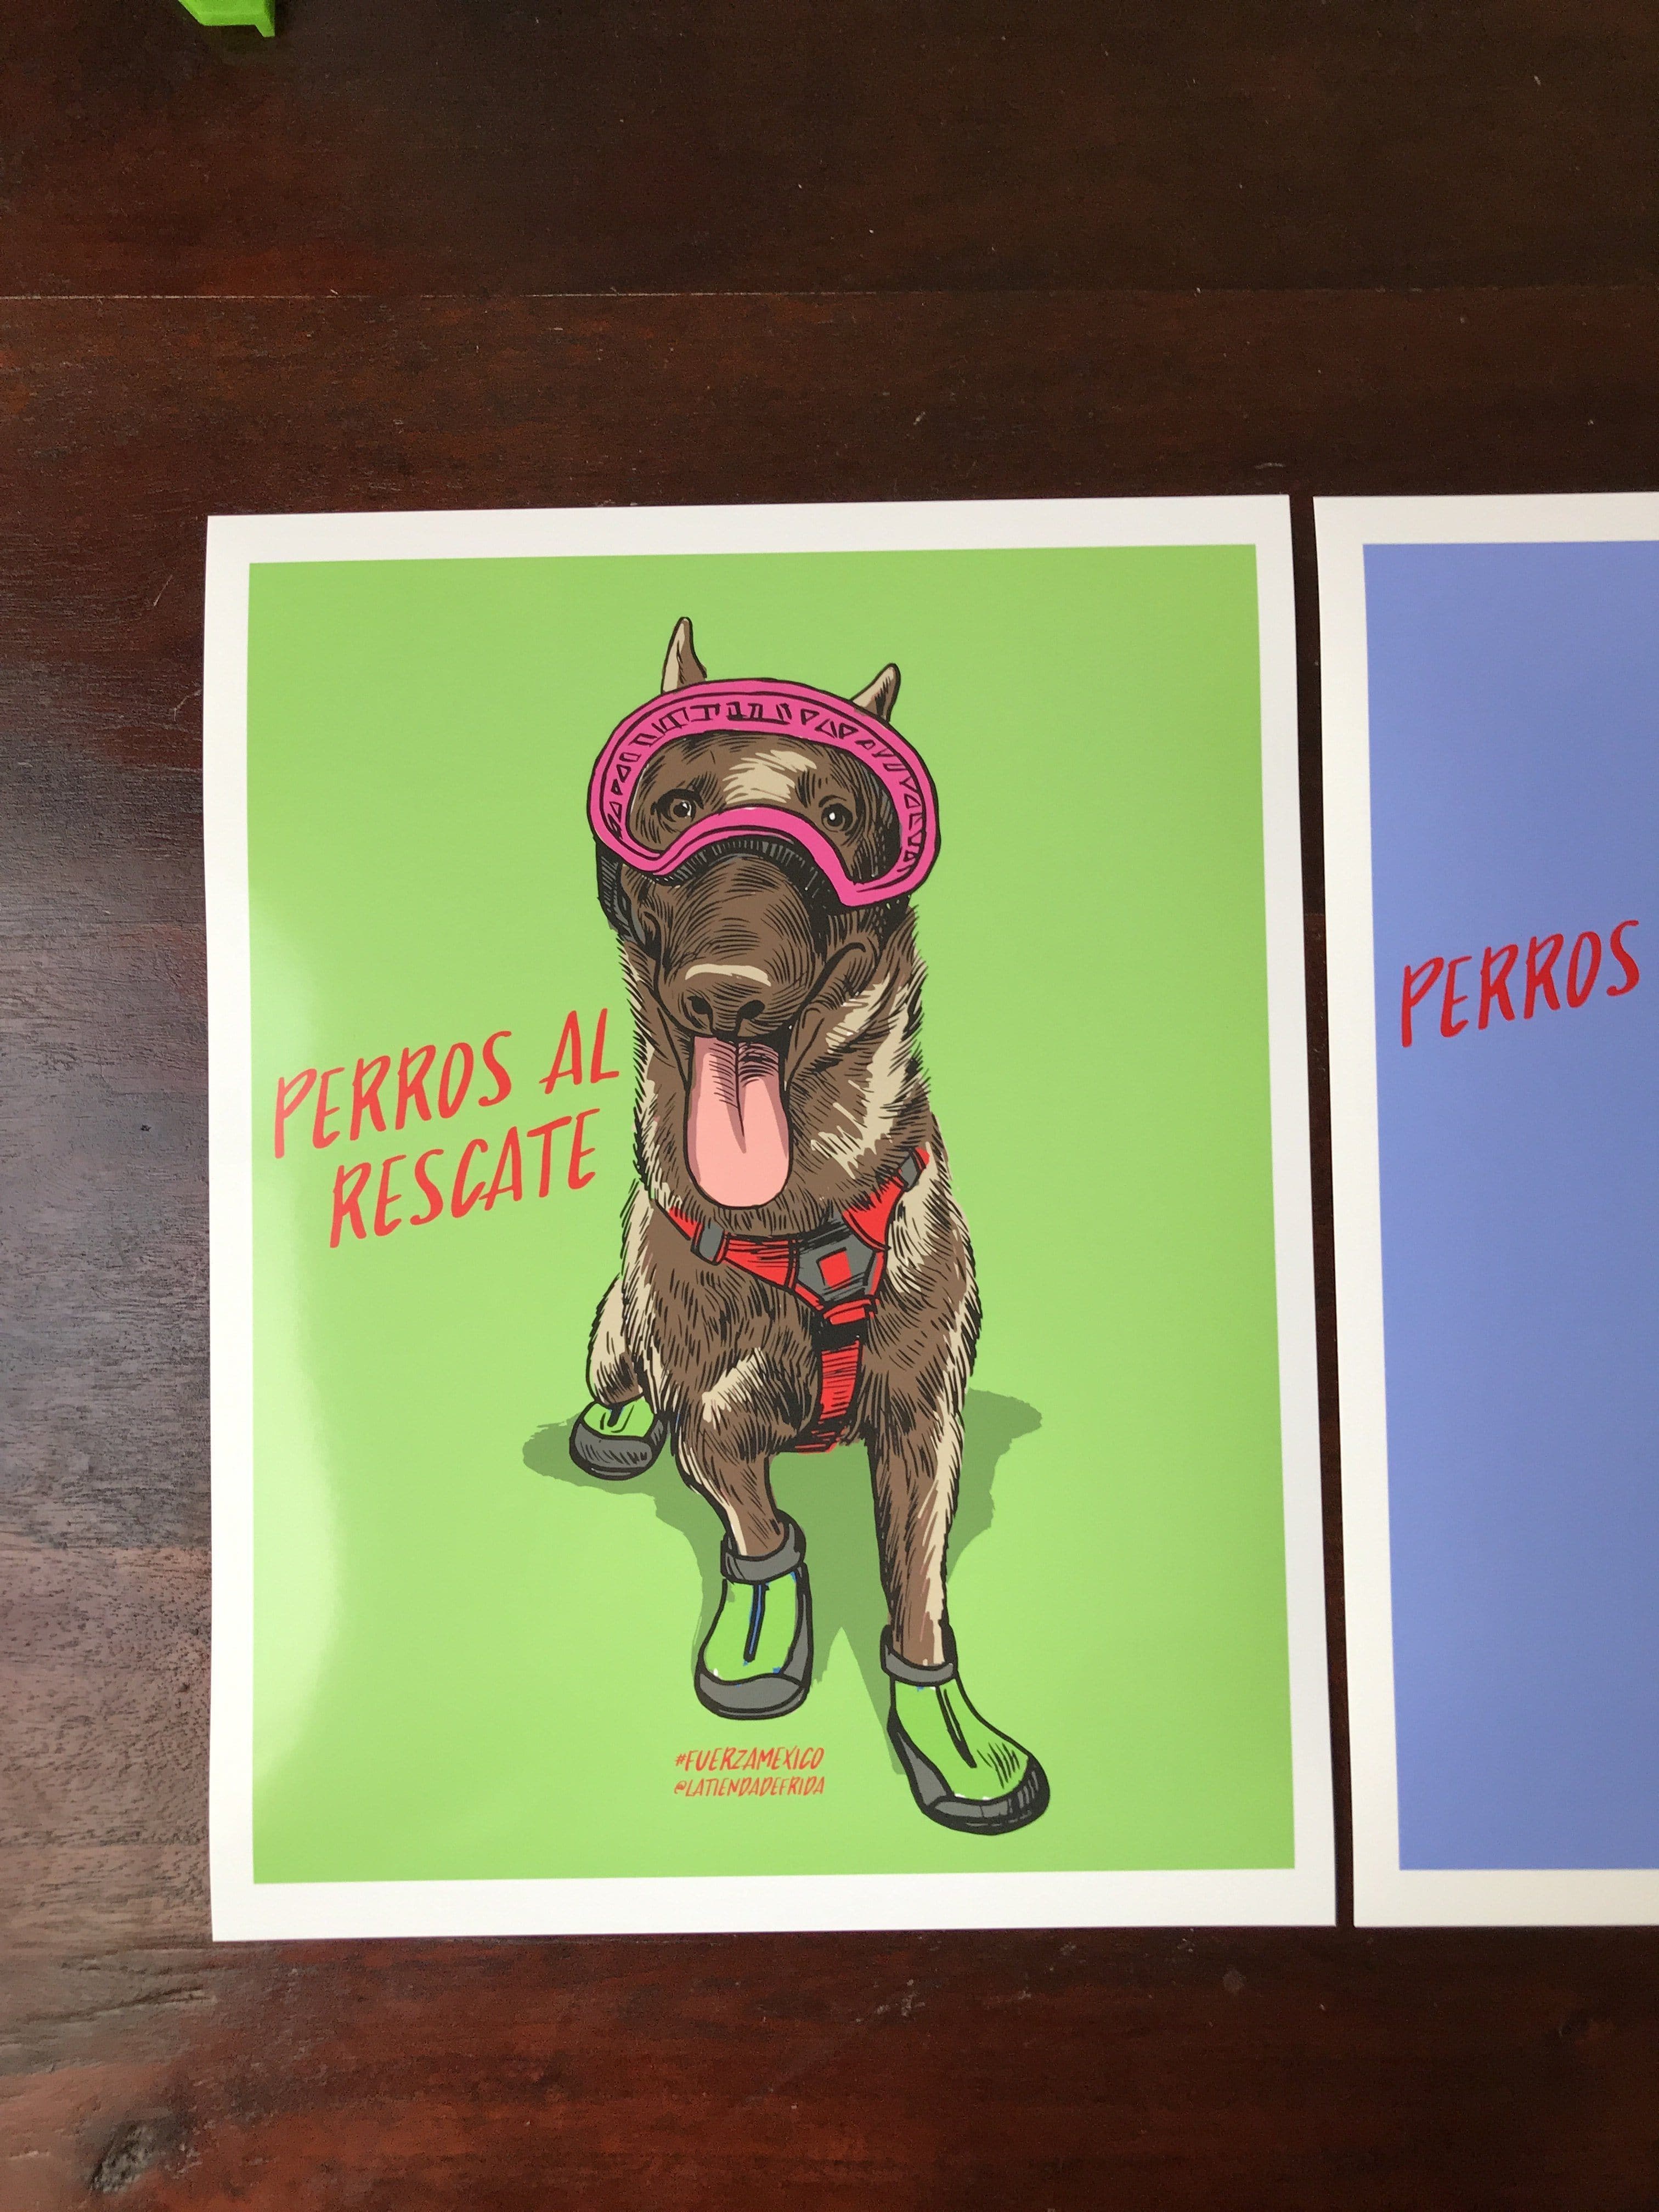 Serie de 5 Ilustraciones en Honor a los Perros de Rescate